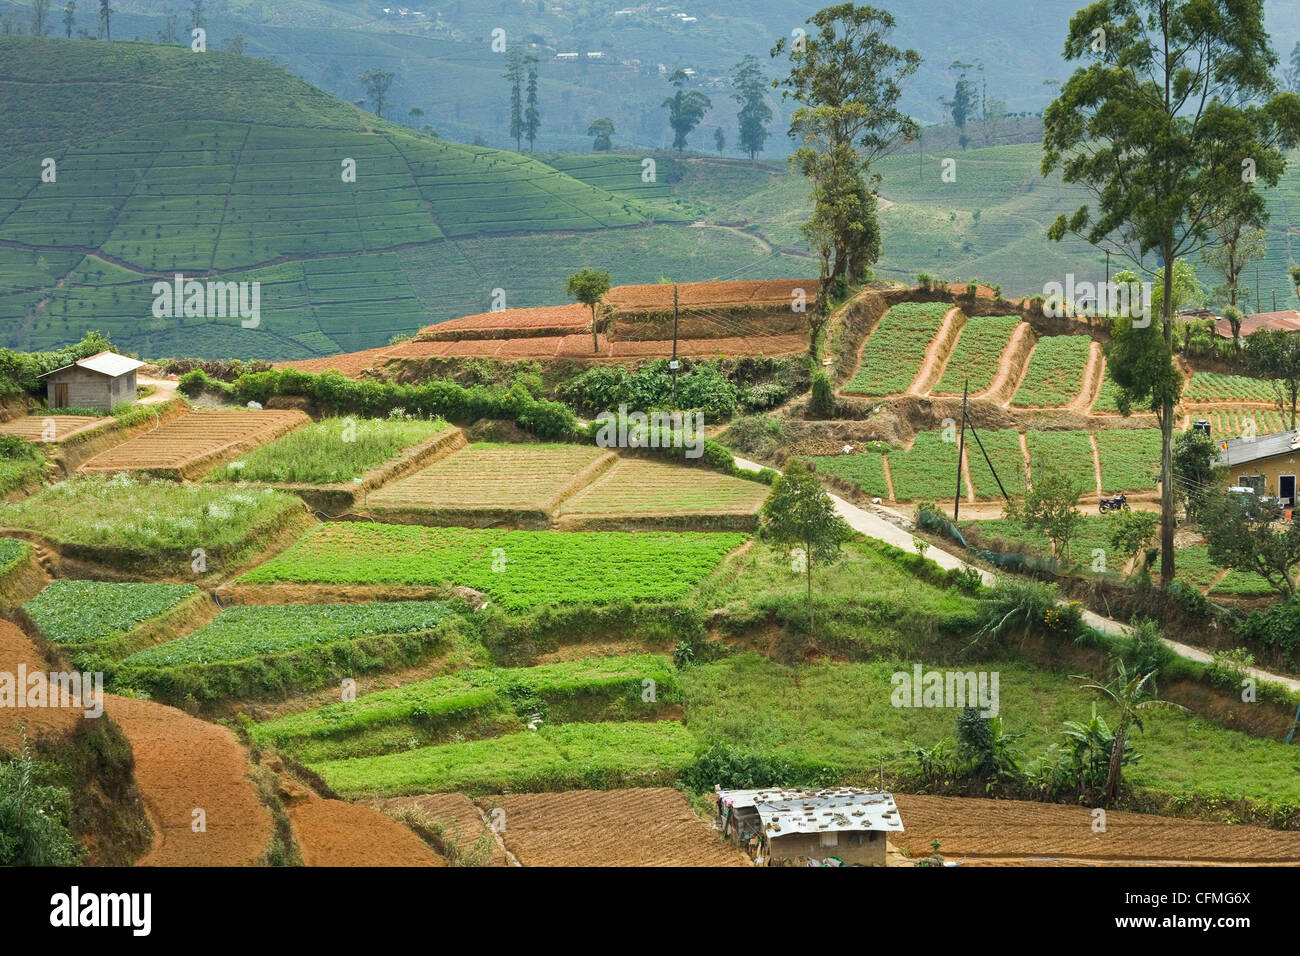 La culture de légumes, une alternative importante à la récolte de thé normal dans la montagne près de Nuwara Eliya, Sri Lanka, Asie Banque D'Images